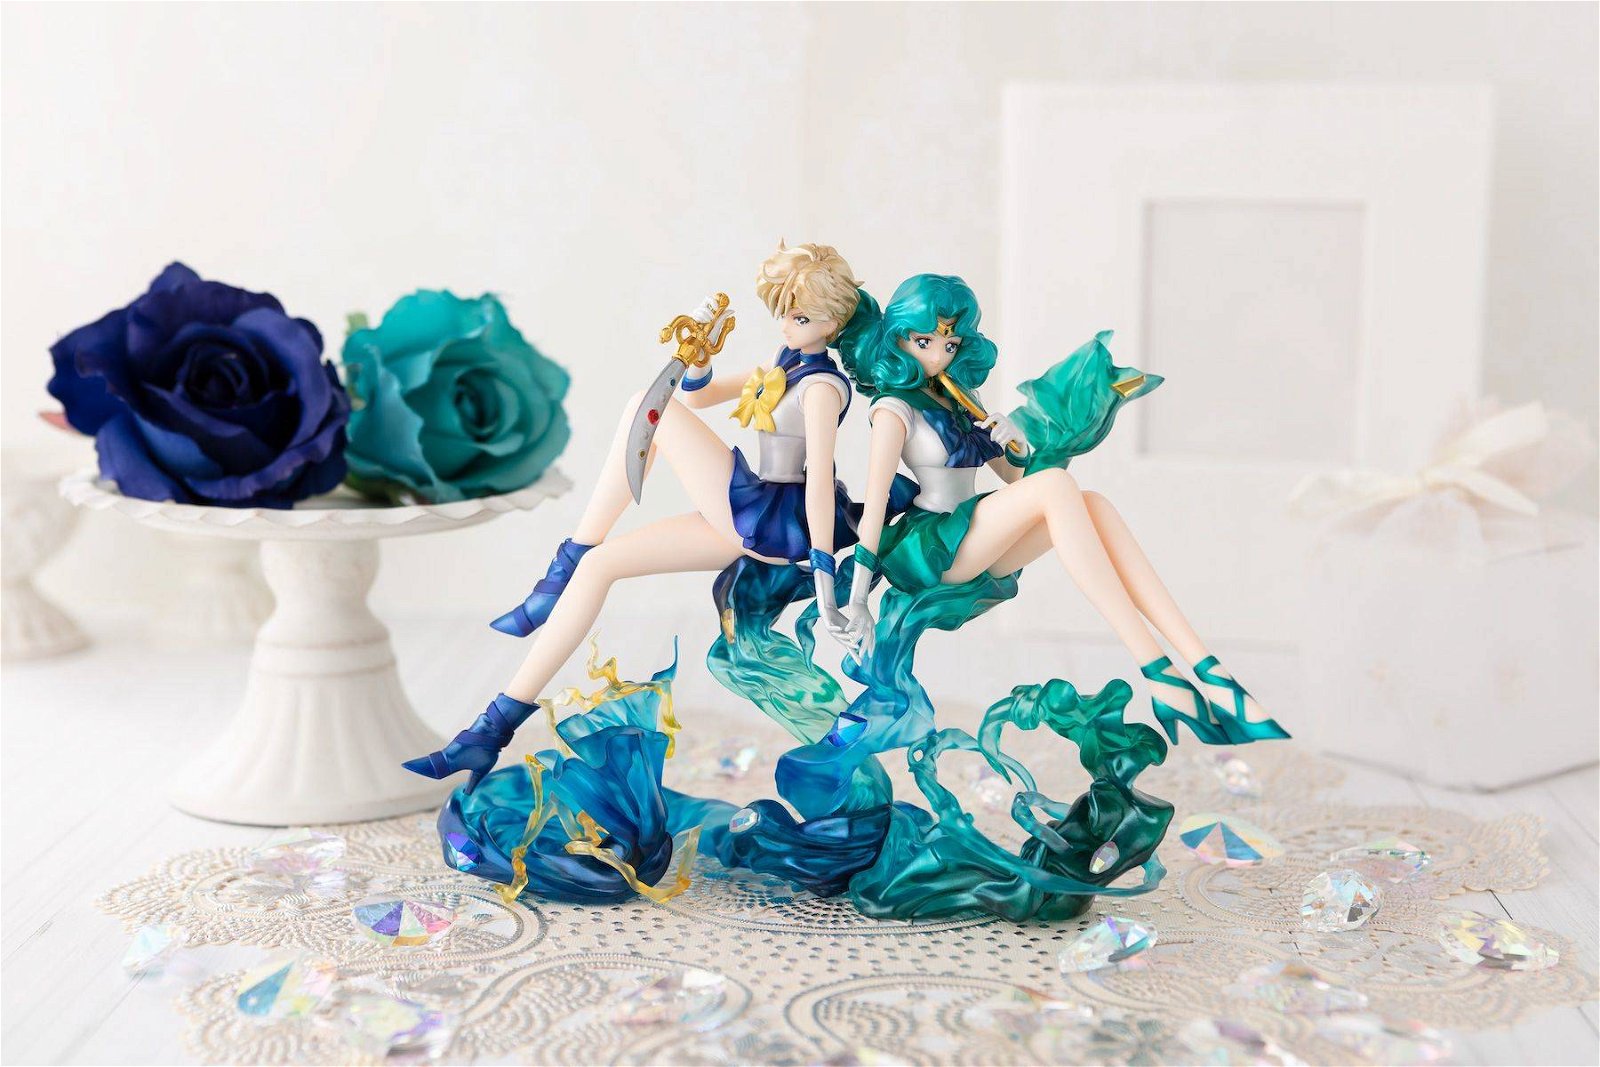 Immagine di Sailor Neptune &amp; Sailor Uranus - Figuarts Zero di Tamashii Nations